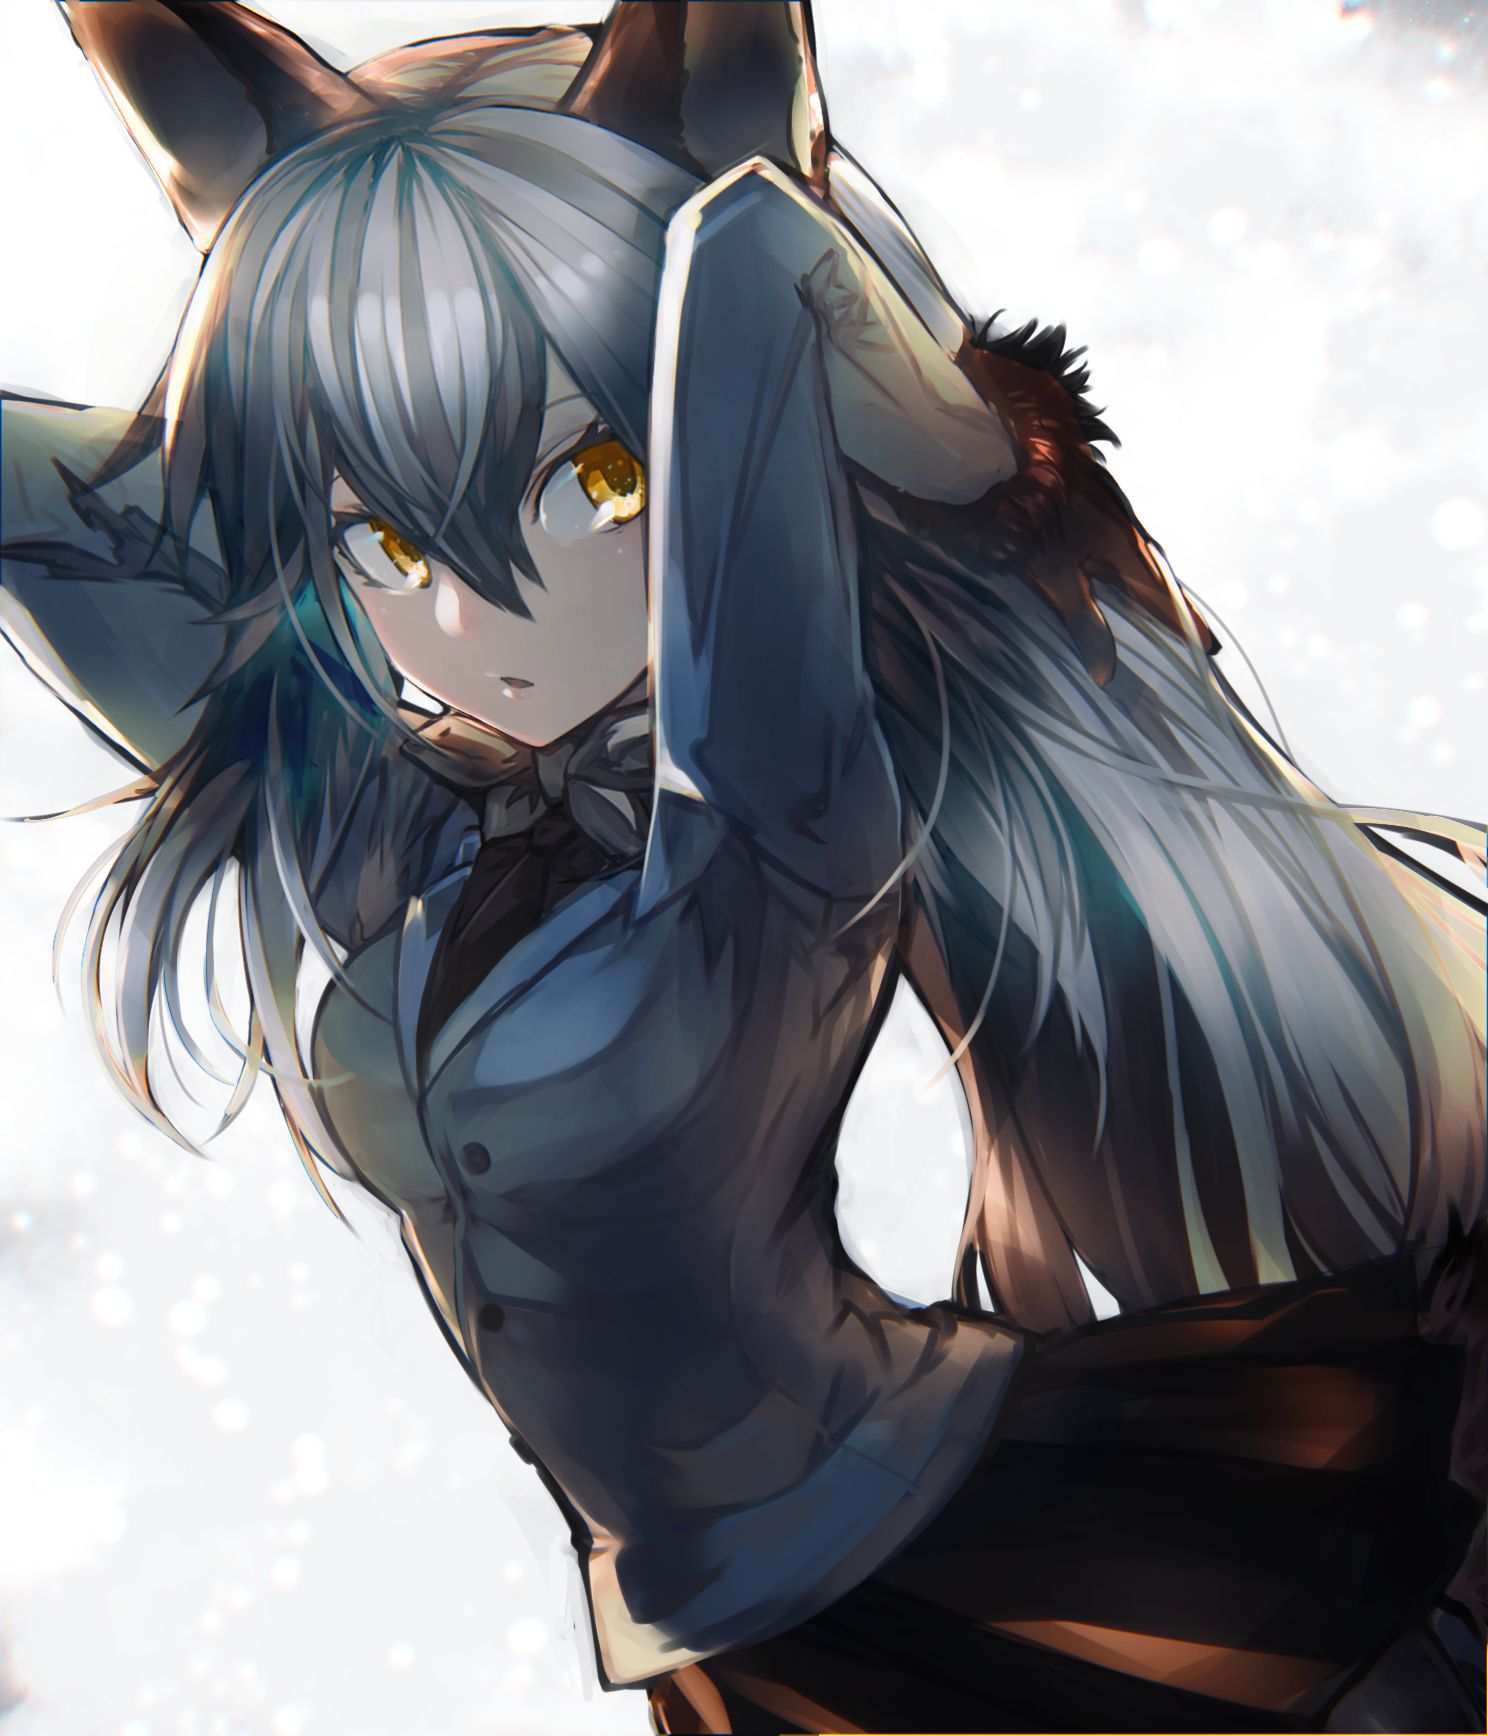 Silver Fox (Kemono Friends) Anime Image Board